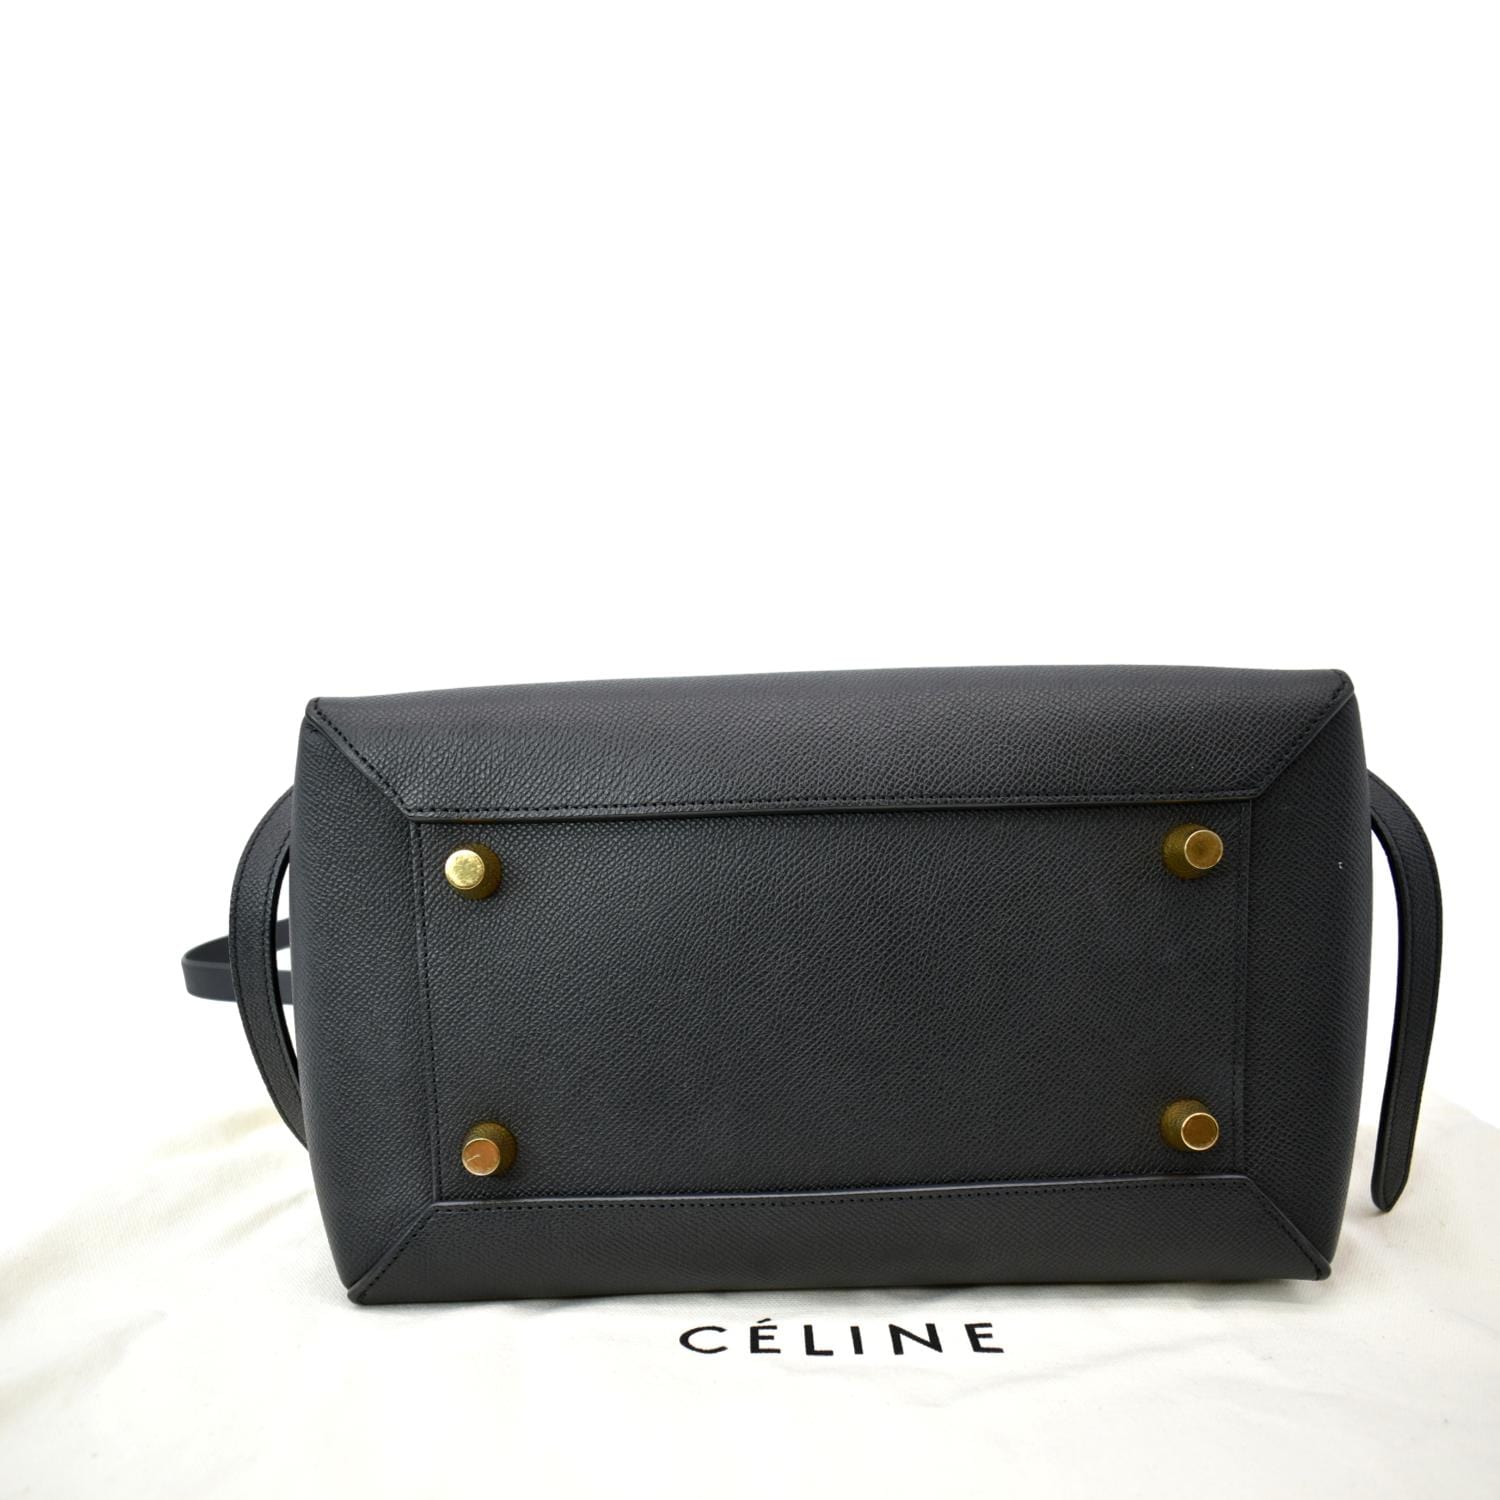 CELINE Belt bag MINI Black leather Women's Shoulder & Hand carry  Authentic